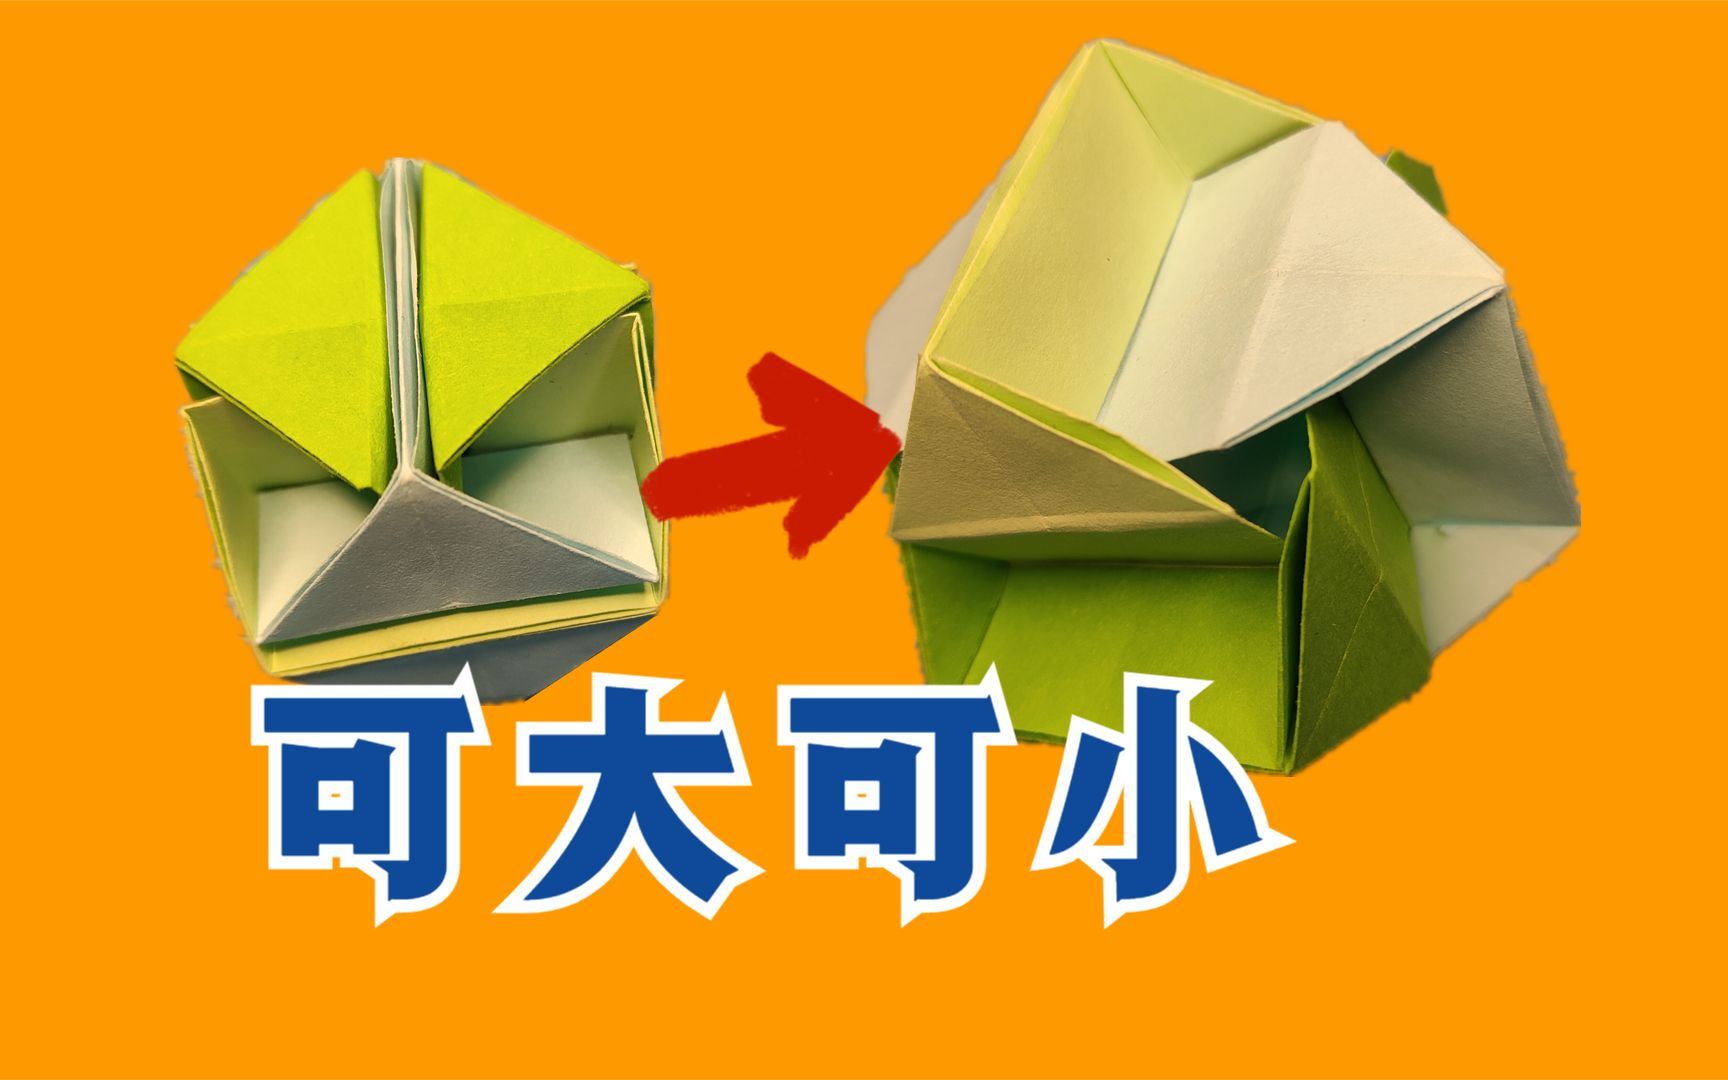 折纸教程:折纸解压玩具可以伸缩变形的立方体,有了它不再无聊